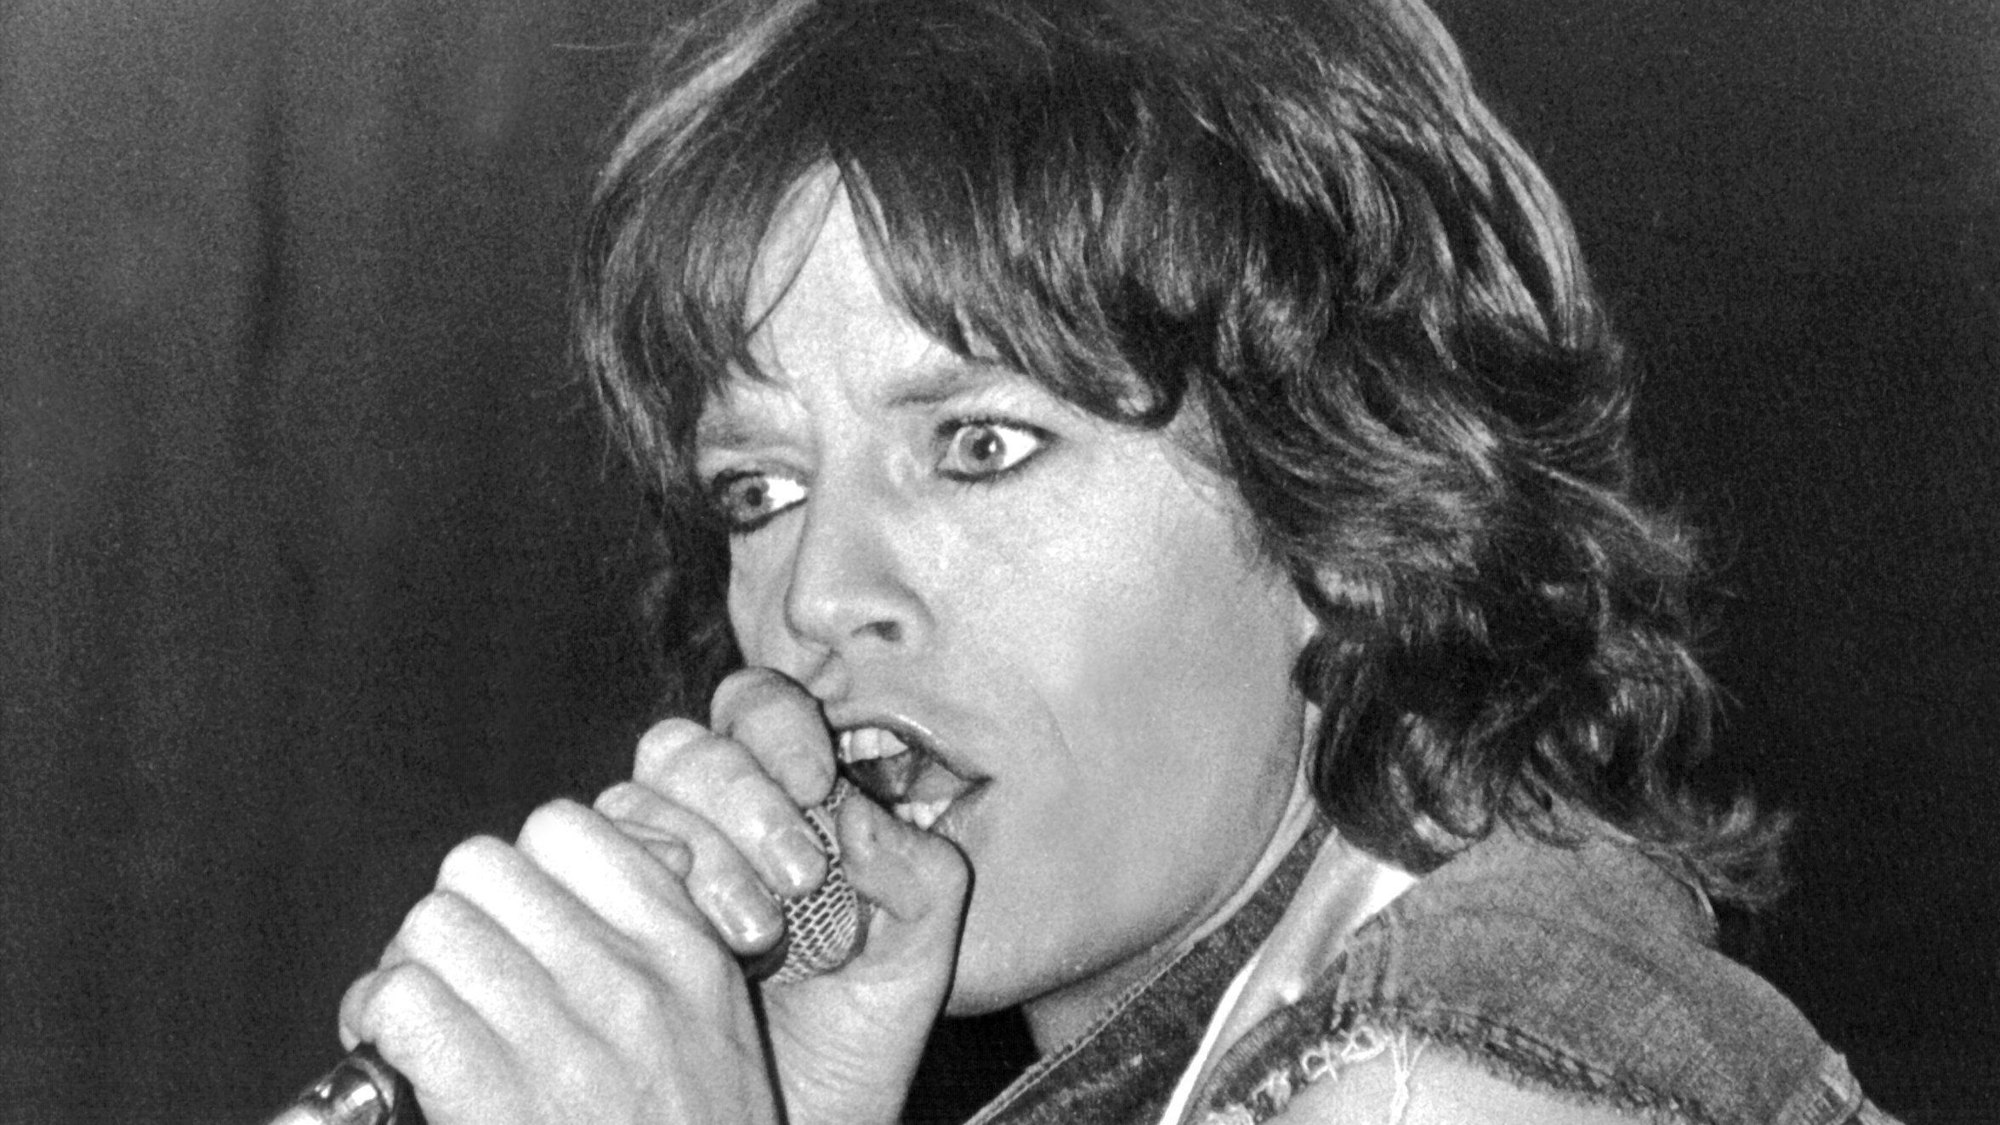 ARCHIV - 02.10.1973, Hamburg: Mick Jagger während eines Auftritts der Rolling Stones in der Hamburger Ernst-Merck-Halle. Mick Jagger, Frontman der Rolling Stones, feiert am 26. Juli 2023 seinen 80. Geburtstag. (zu dpa: «Rolling-Stones-Sänger und ewige Rockikone: Mick Jagger wird 80») Foto: picture alliance / dpa +++ dpa-Bildfunk +++